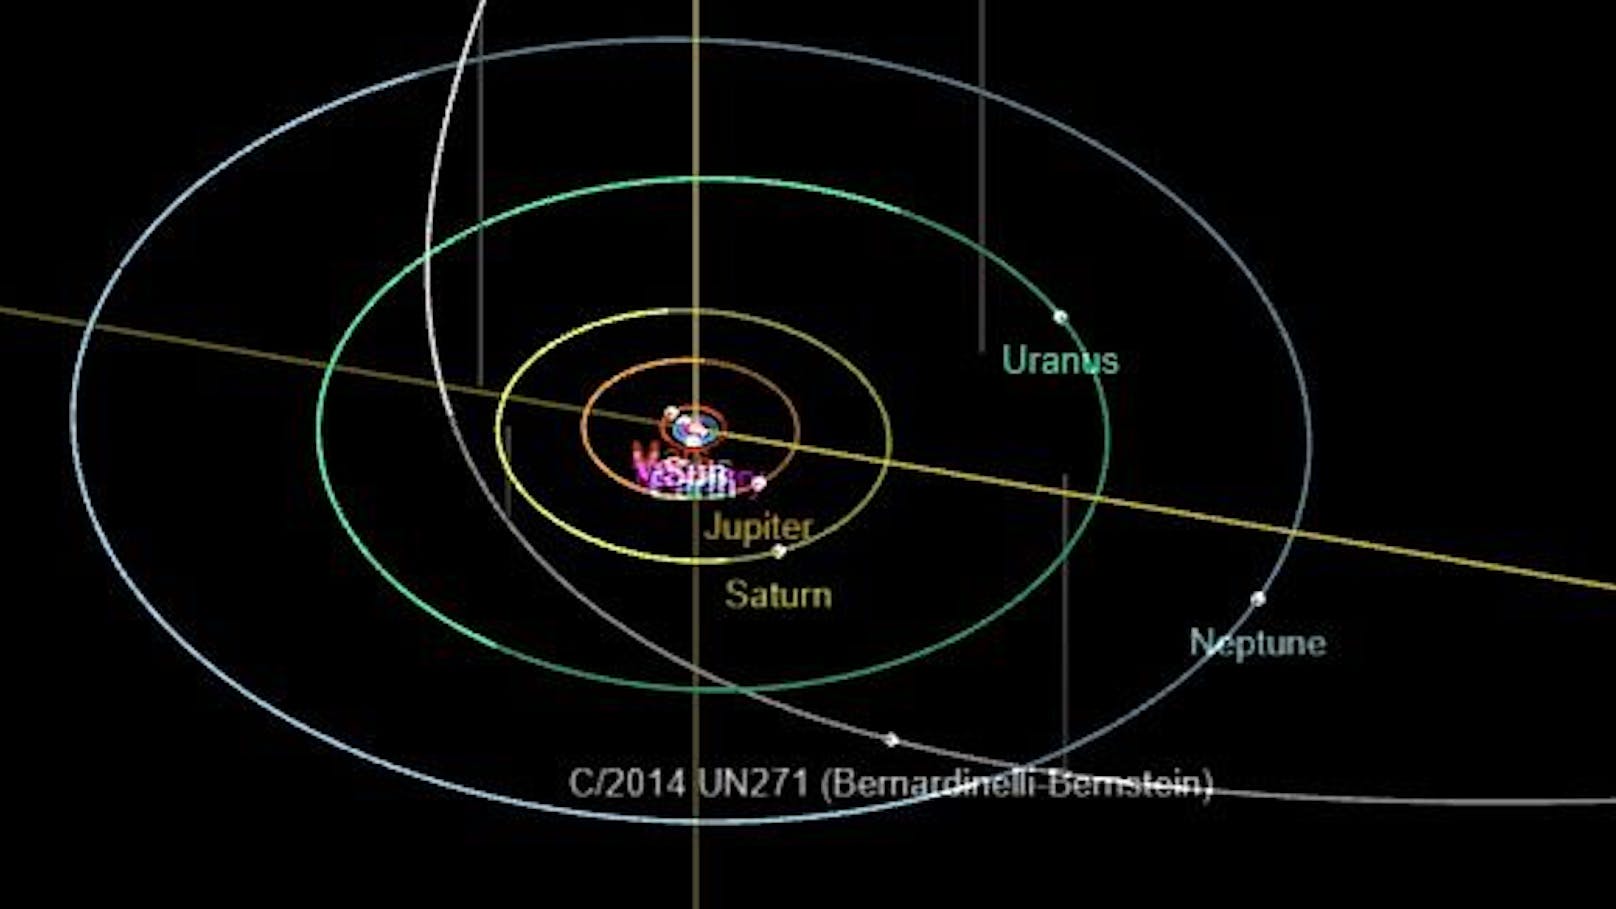 C/2014 UN271 (Bernardinelli-Bernstein) wird bis zur Umlaufbahn des Saturn der Sonne nahe kommen.